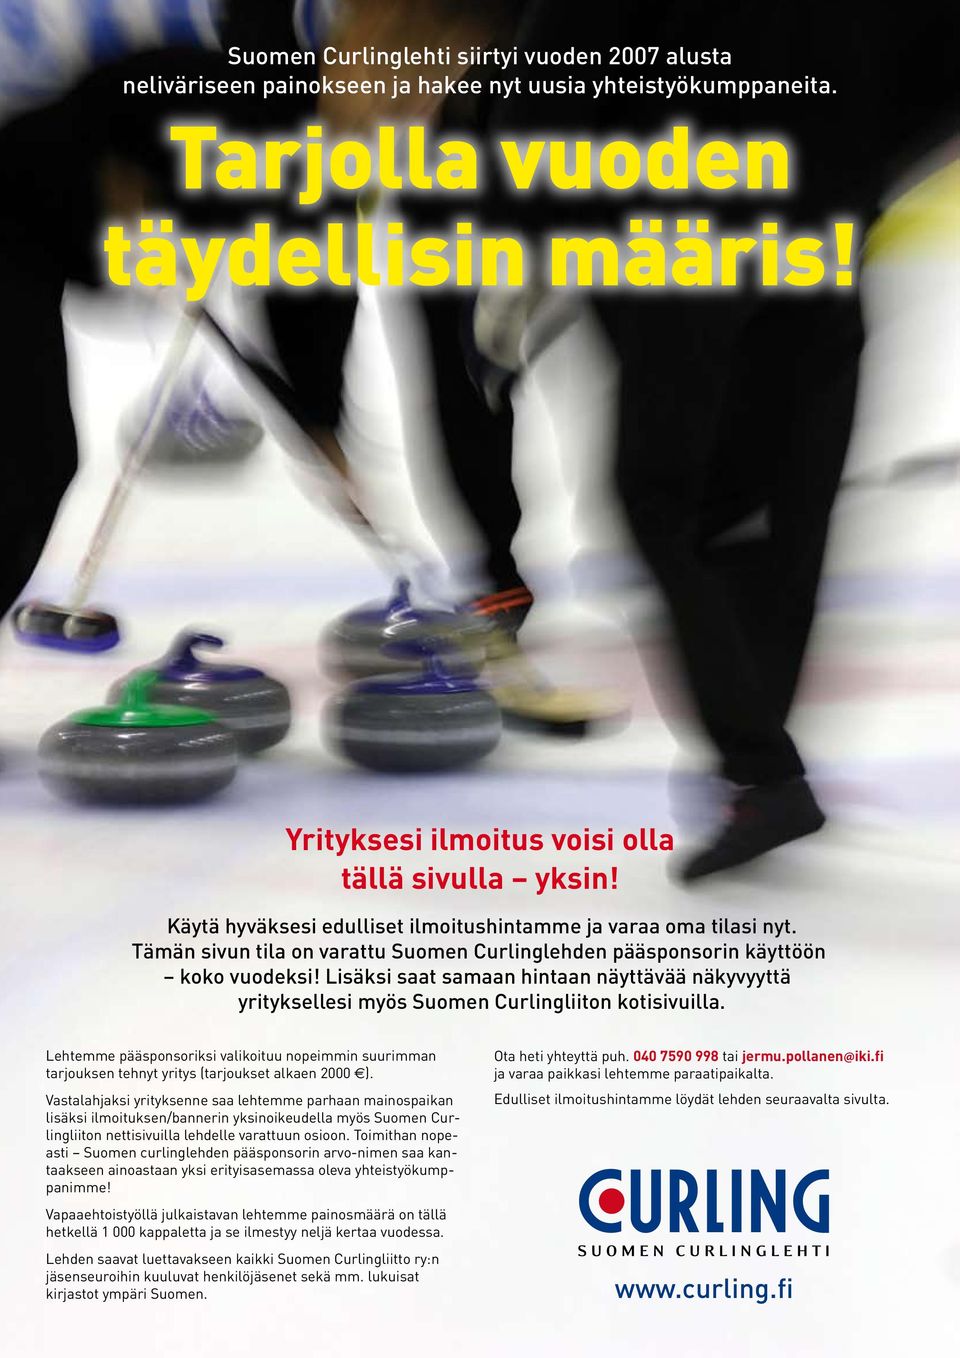 Lisäksi saat samaan hintaan näyttävää näkyvyyttä yrityksellesi myös Suomen Curlingliiton kotisivuilla.